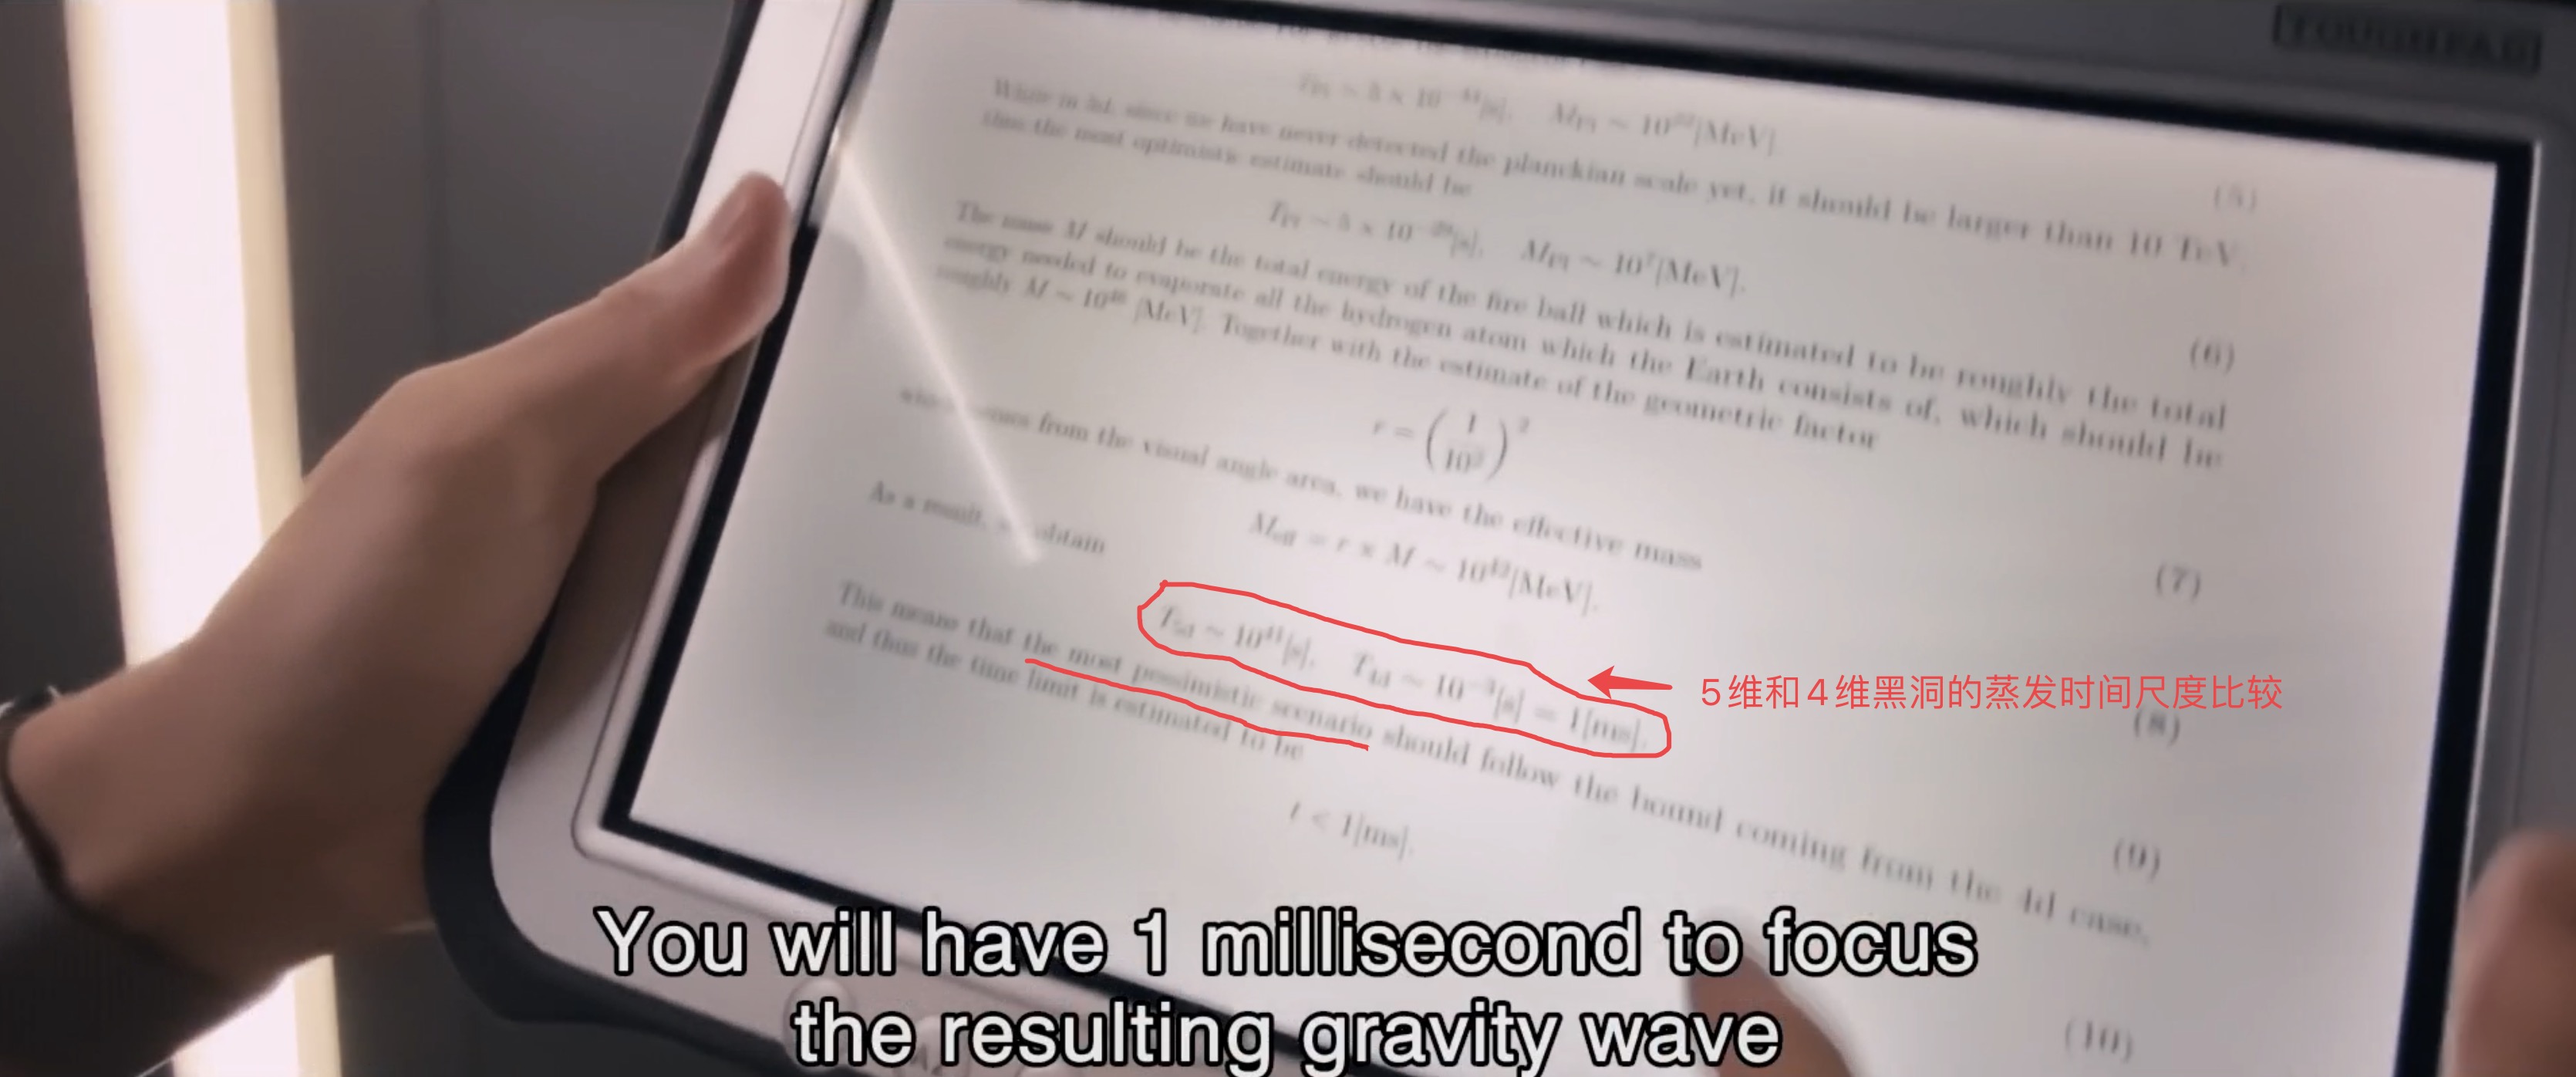 《新·奧特曼》也是庵野秀明給高能物理學者的一封情書